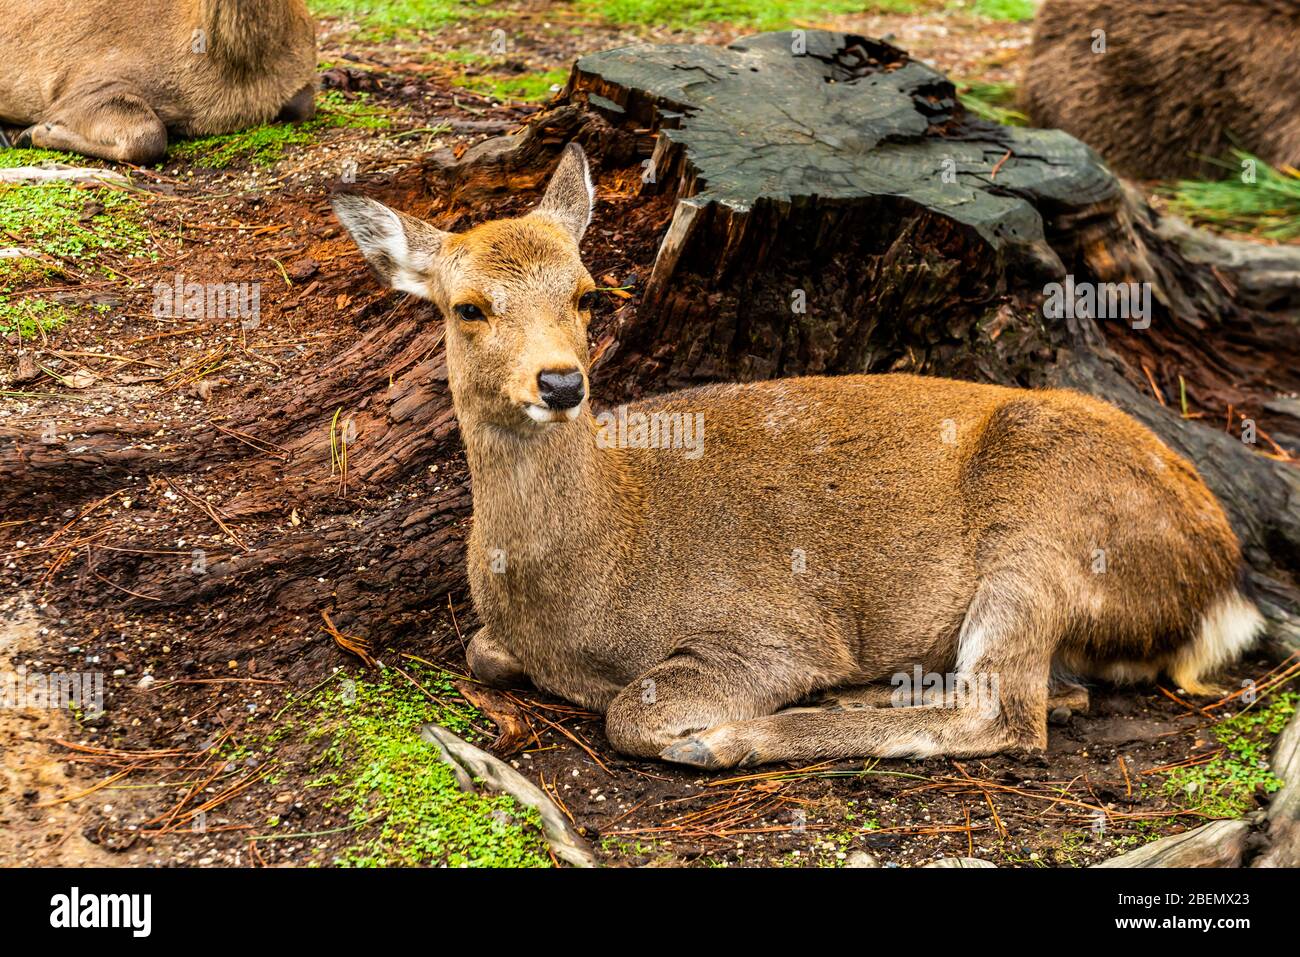 Nara, Kyoto, Japan: October 29, 2019: Nara deer (semi wild sika deer) roam freely in Nara Park, begging for deer crackers Stock Photo